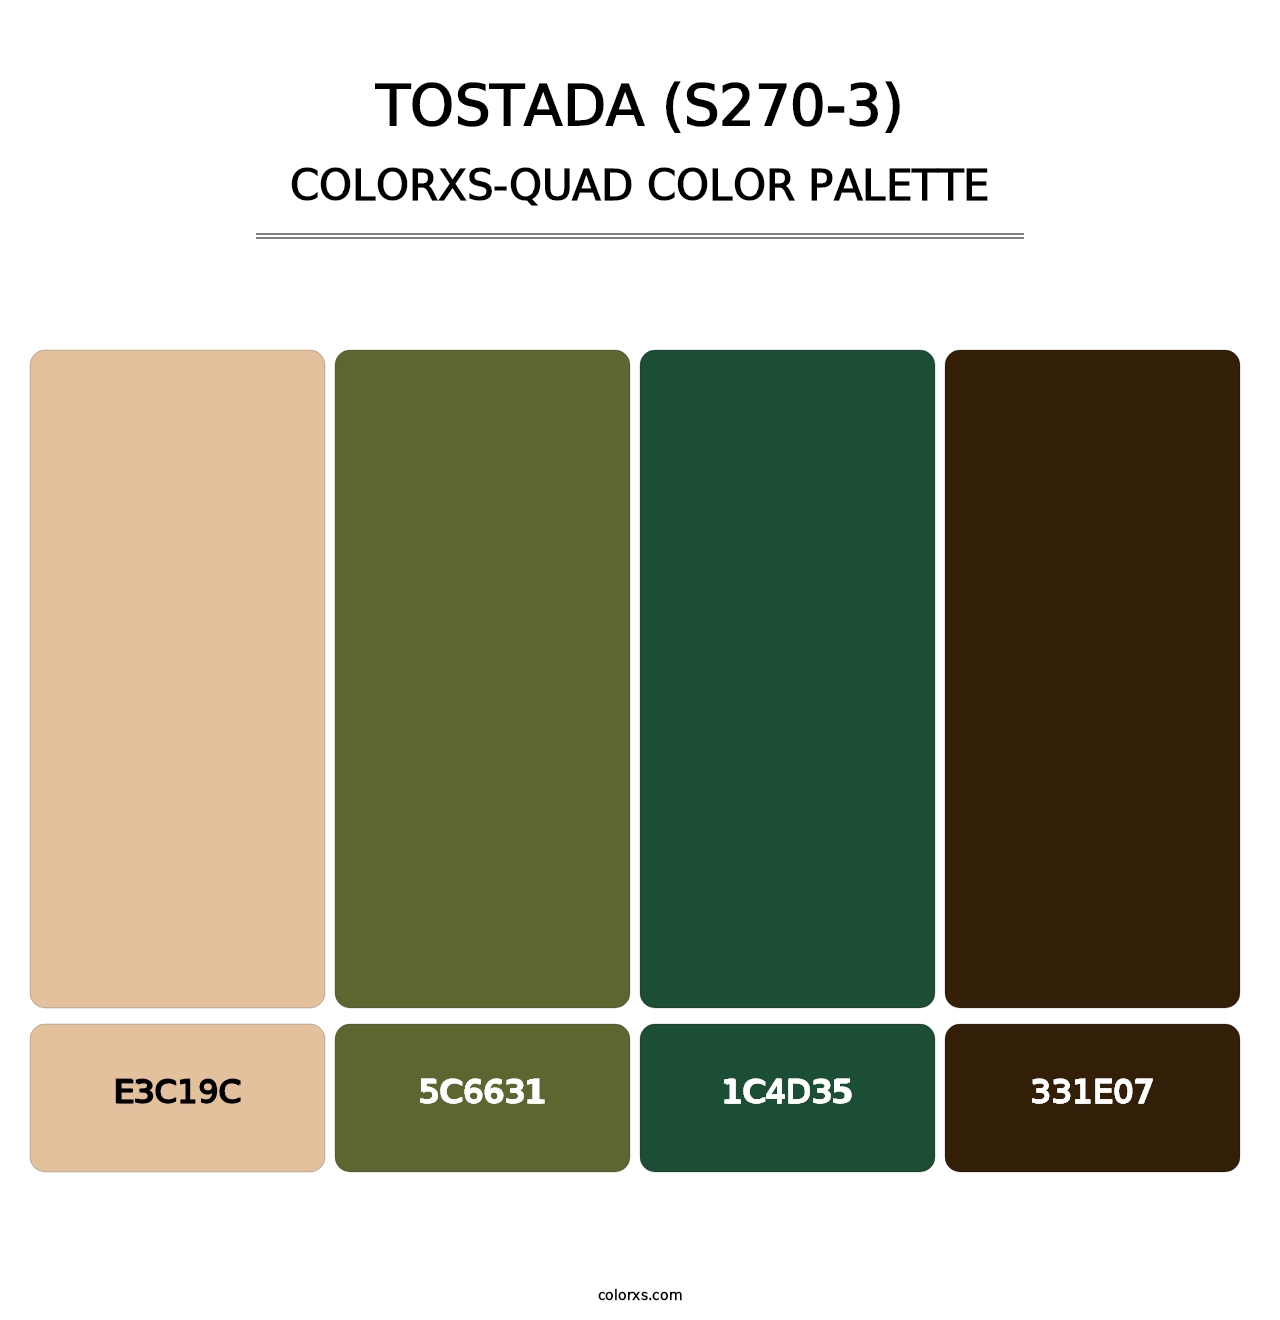 Tostada (S270-3) - Colorxs Quad Palette